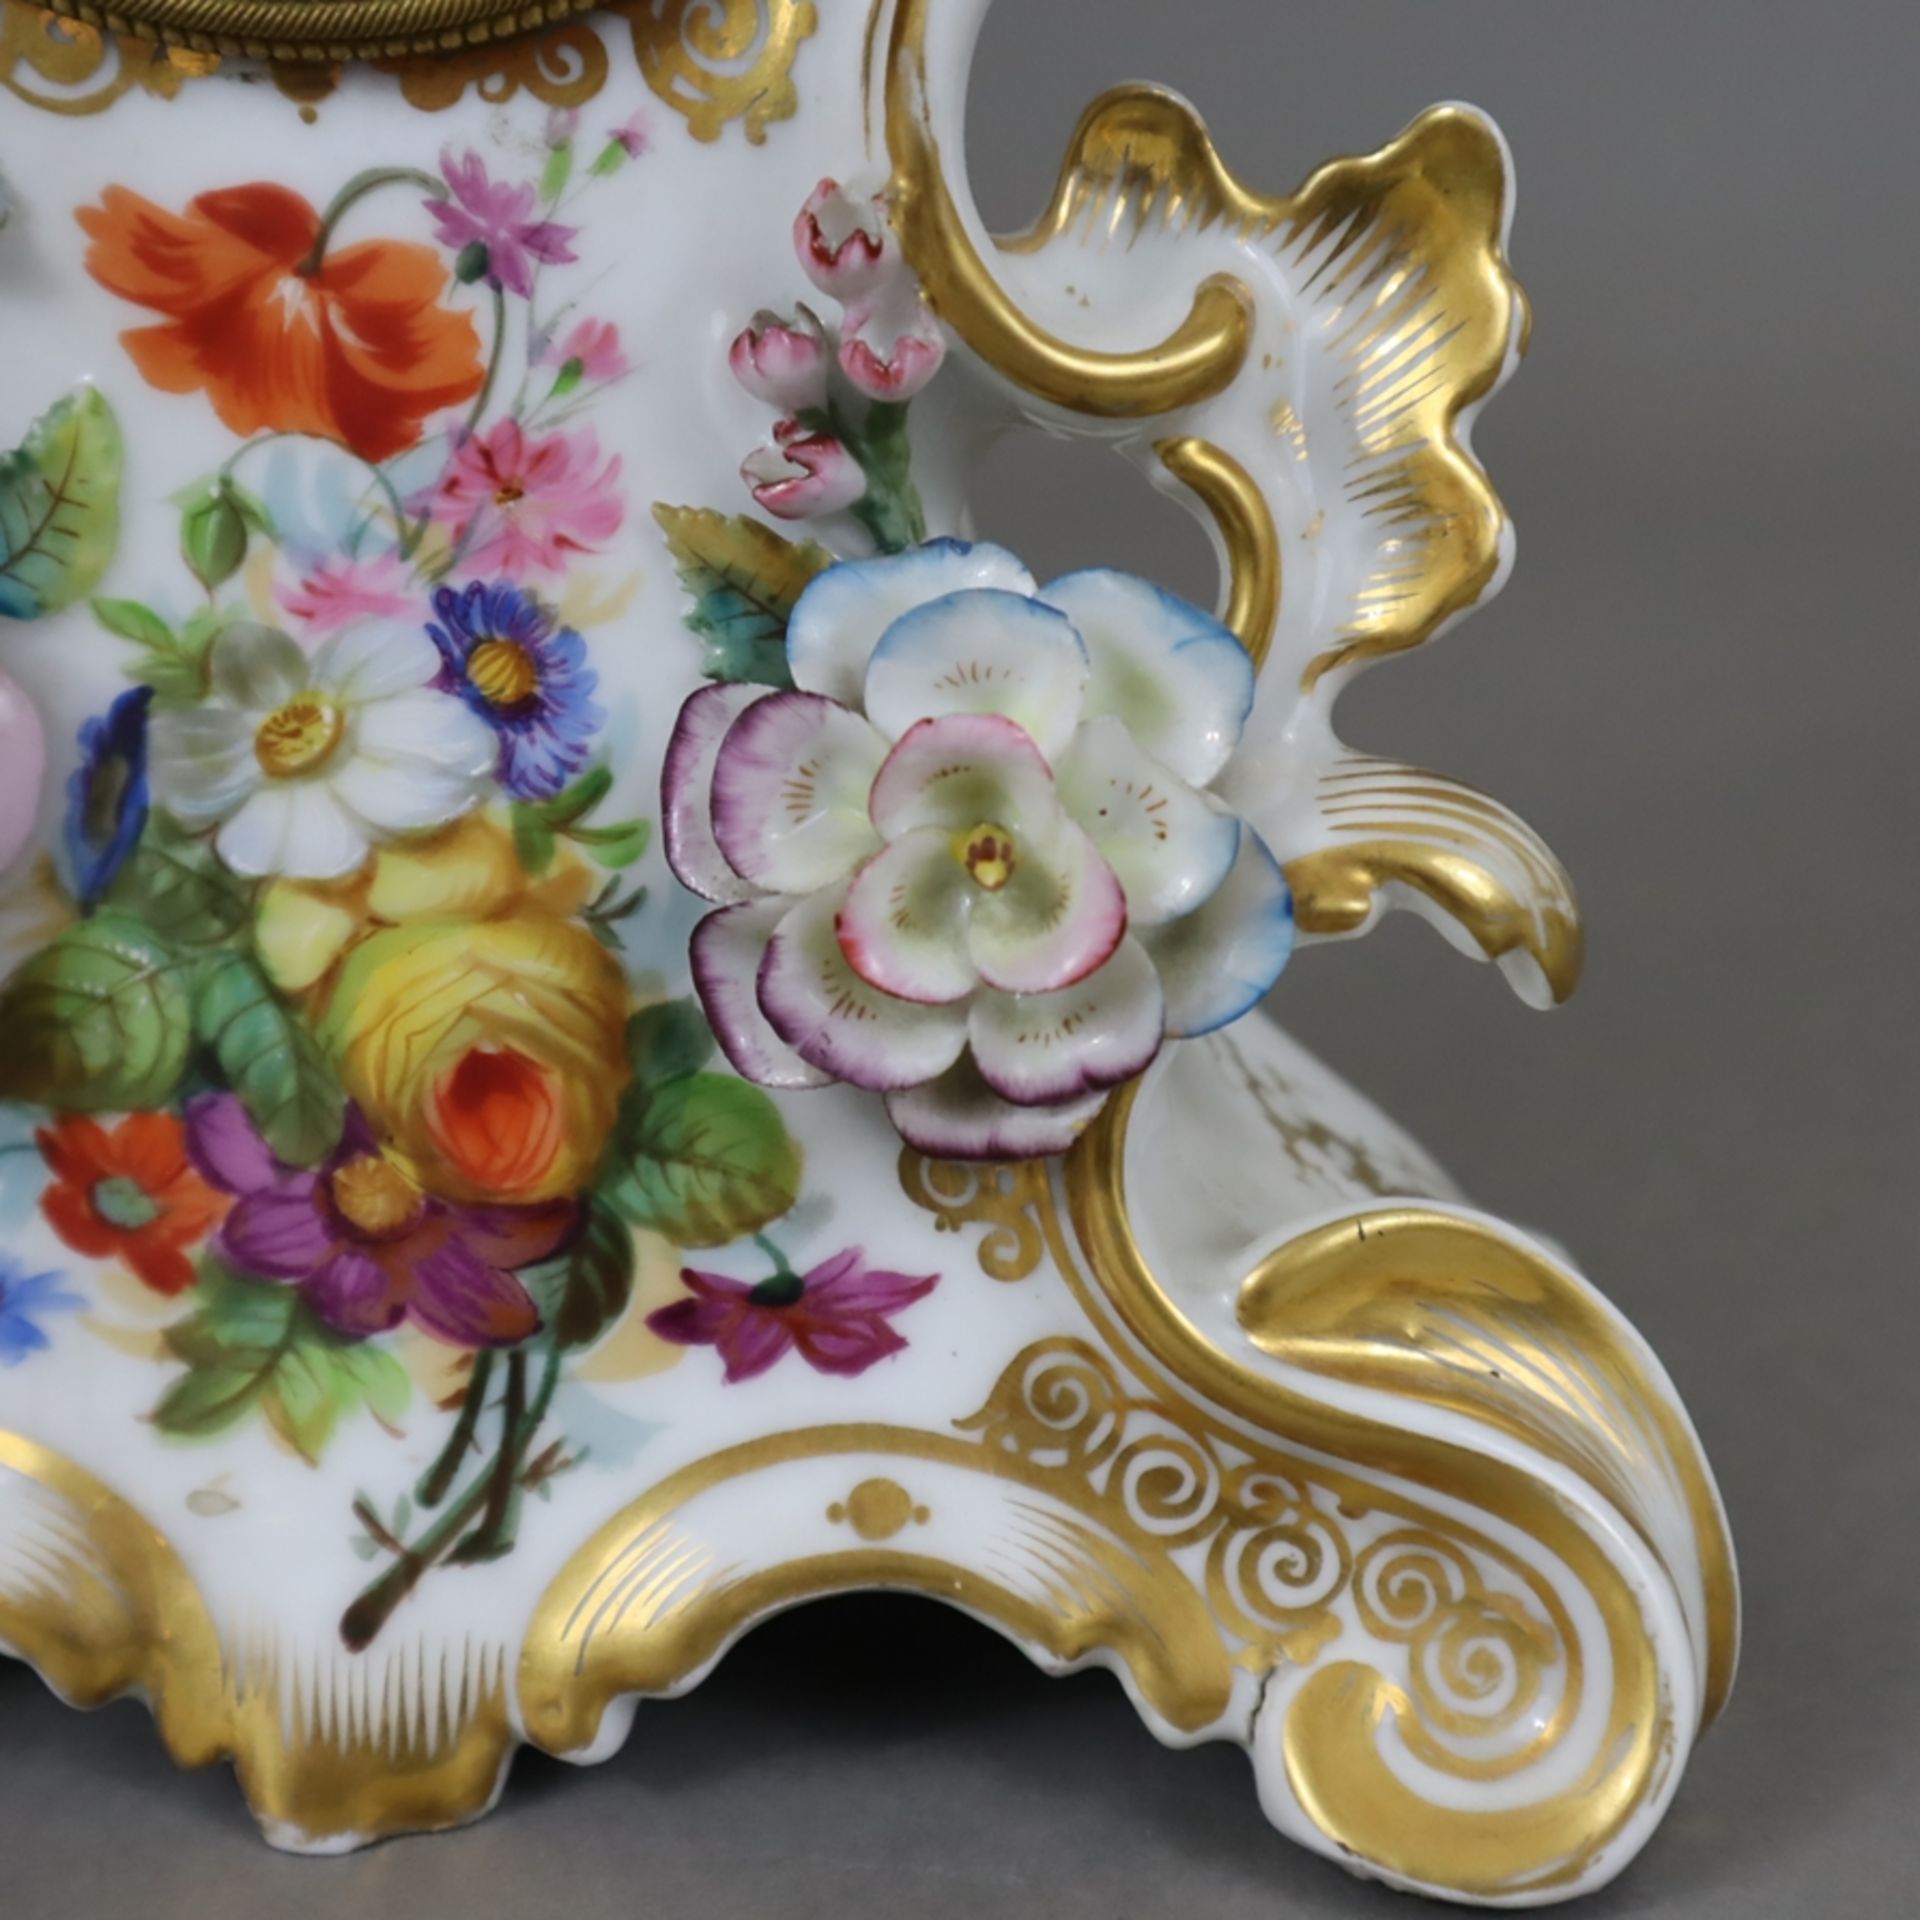 Porzellanuhr - teils durchbrochen gearbeitetes Rocaillegehäuse mit polychromer Blumenmalerei, Golds - Bild 6 aus 11